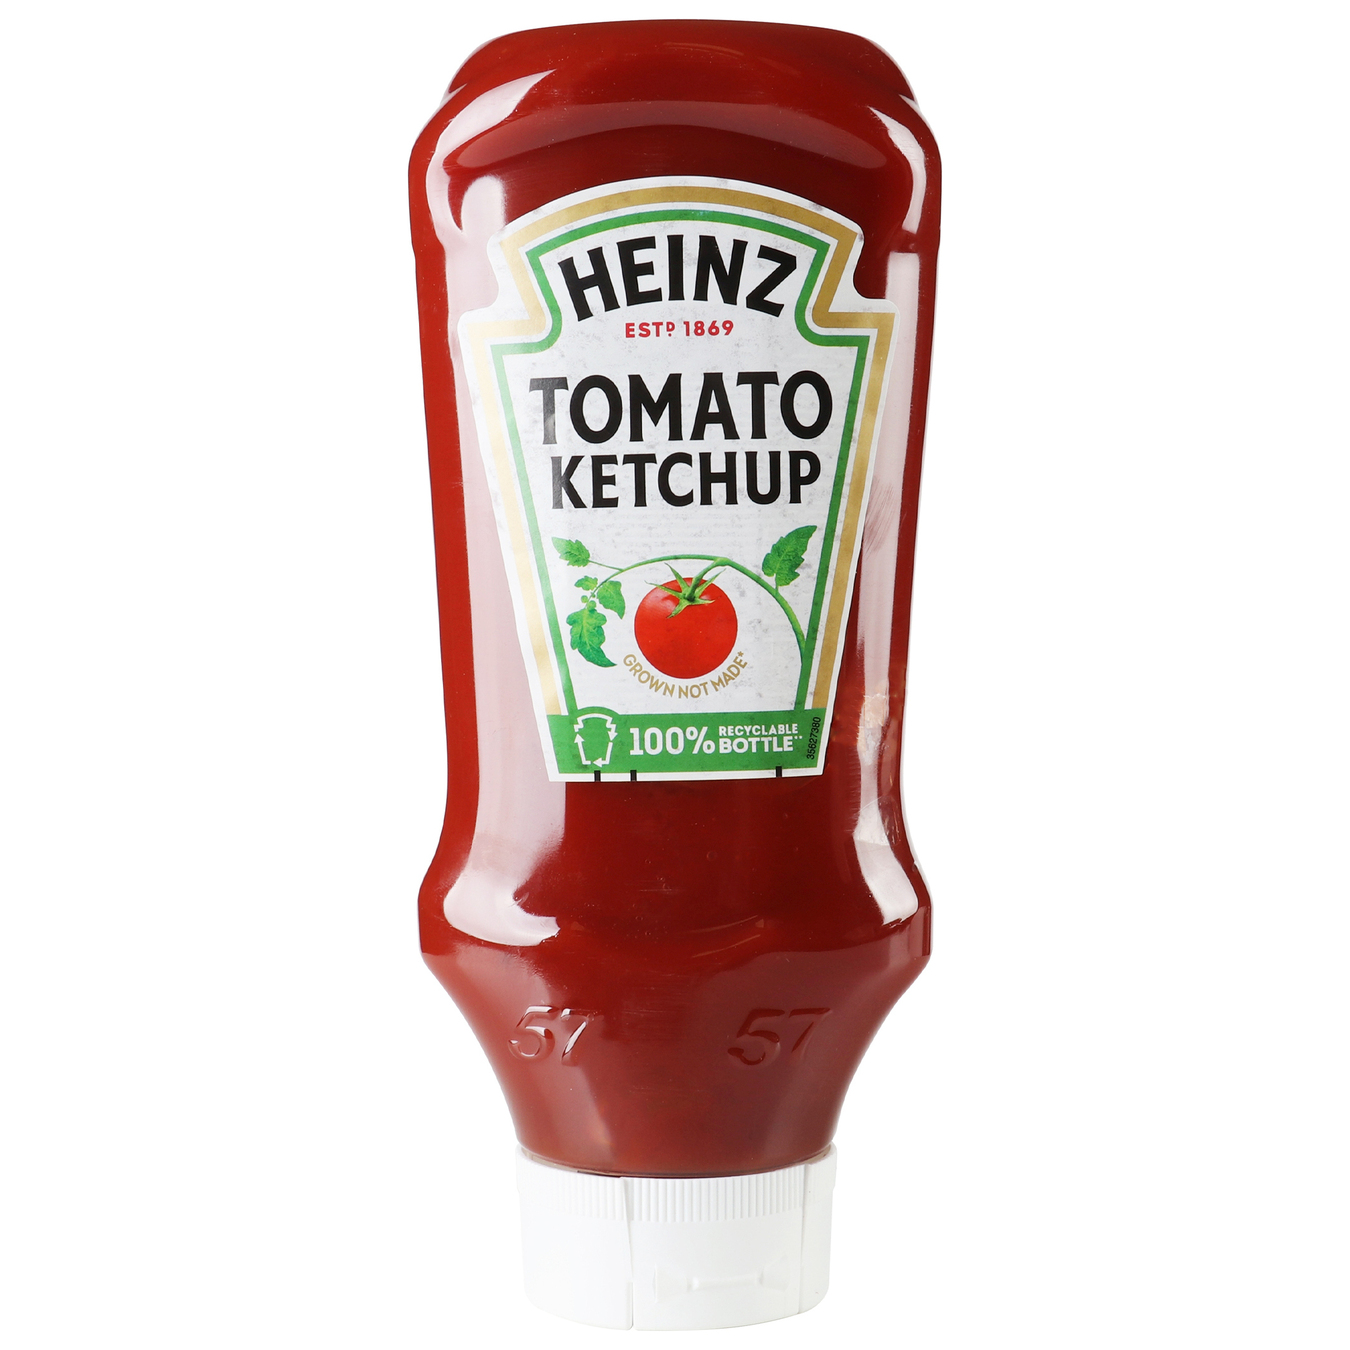 Heinz tomato ketchup 700g